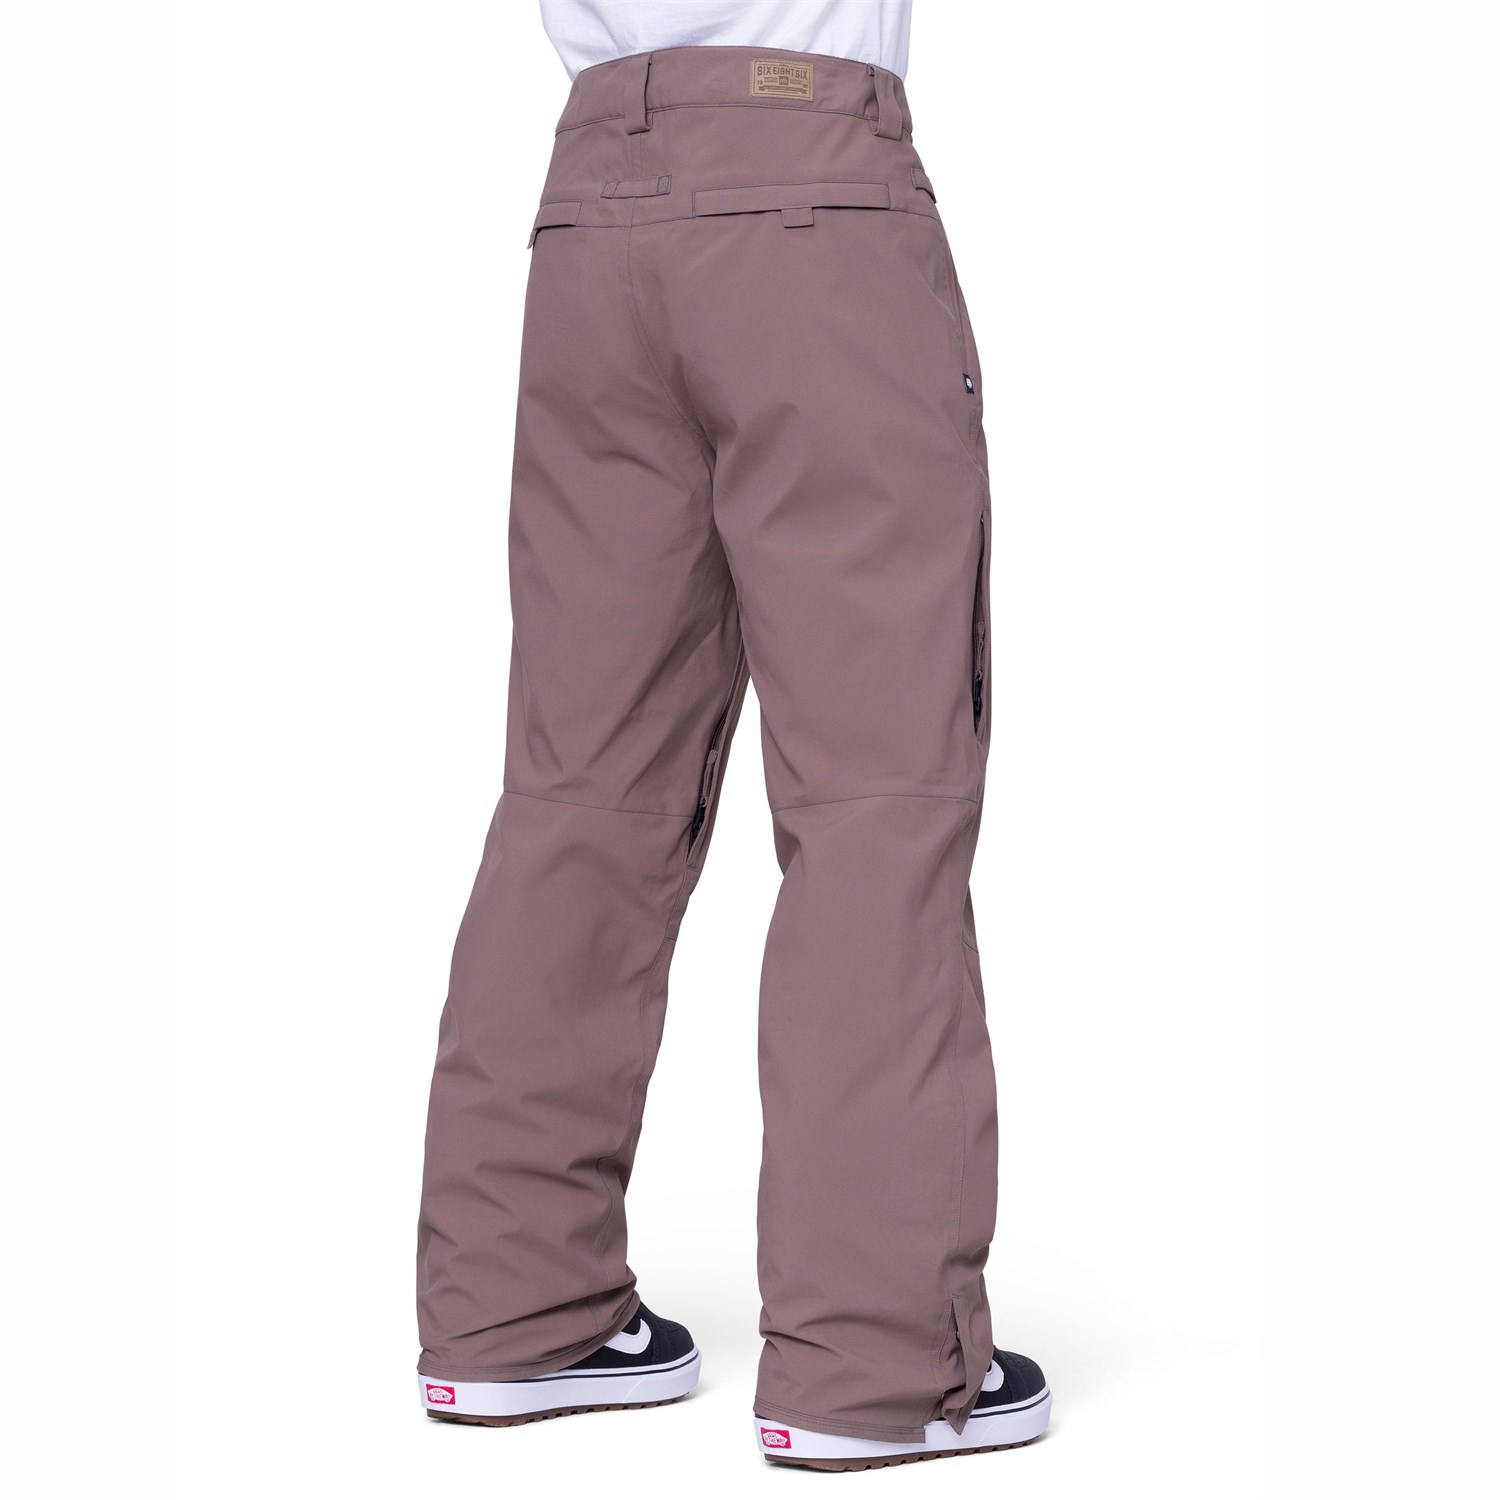 686 MNS Standard Pnt - Pantalones de Snowboard para Hombre, Hombre